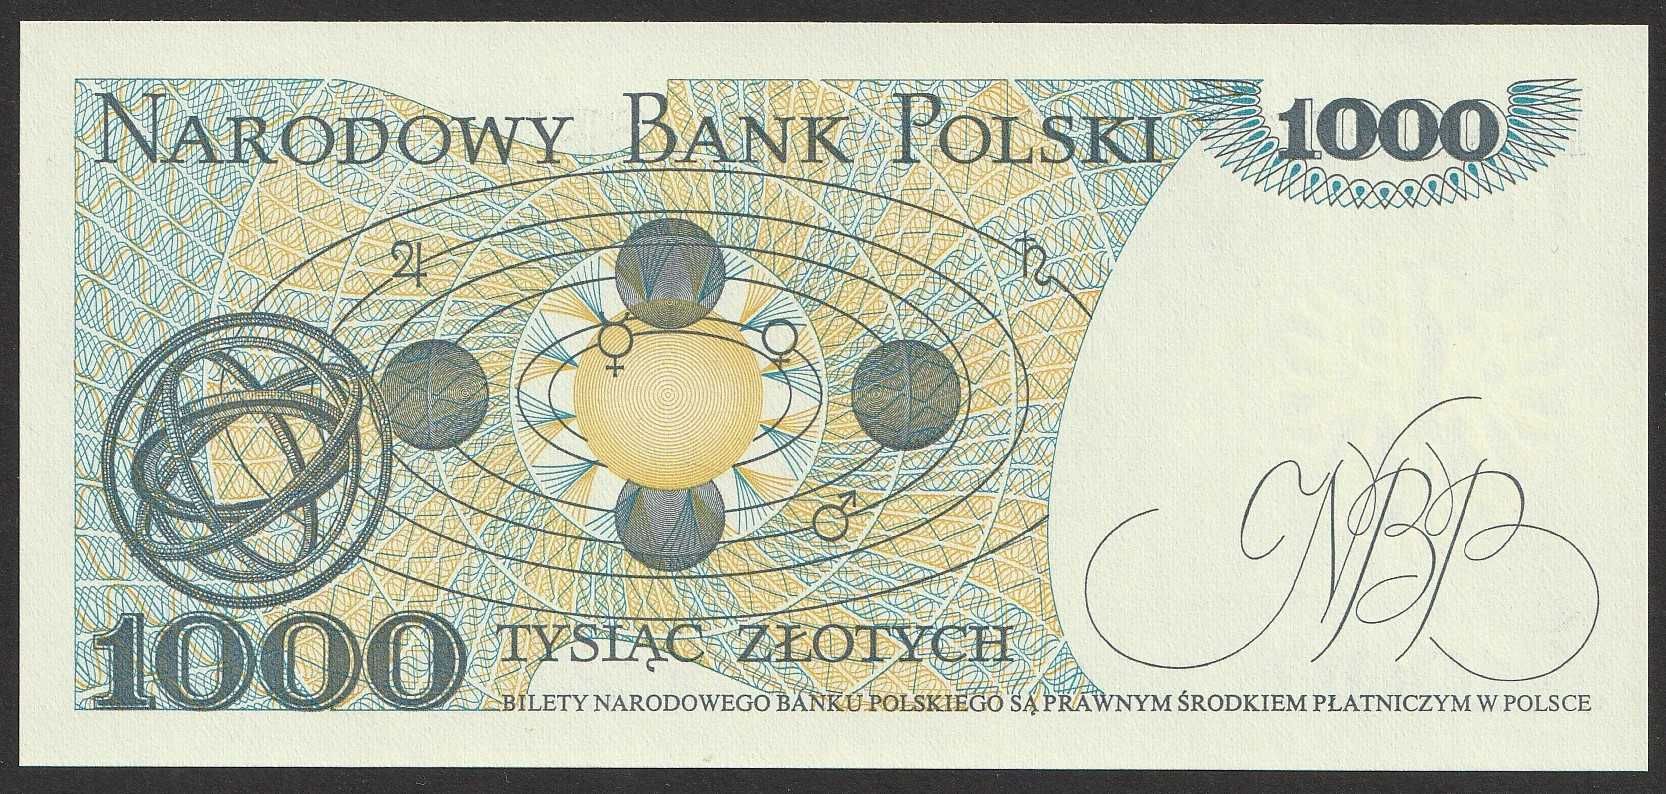 Polska 1000 złotych 1982 - Kopernik - KH - stan bankowy UNC